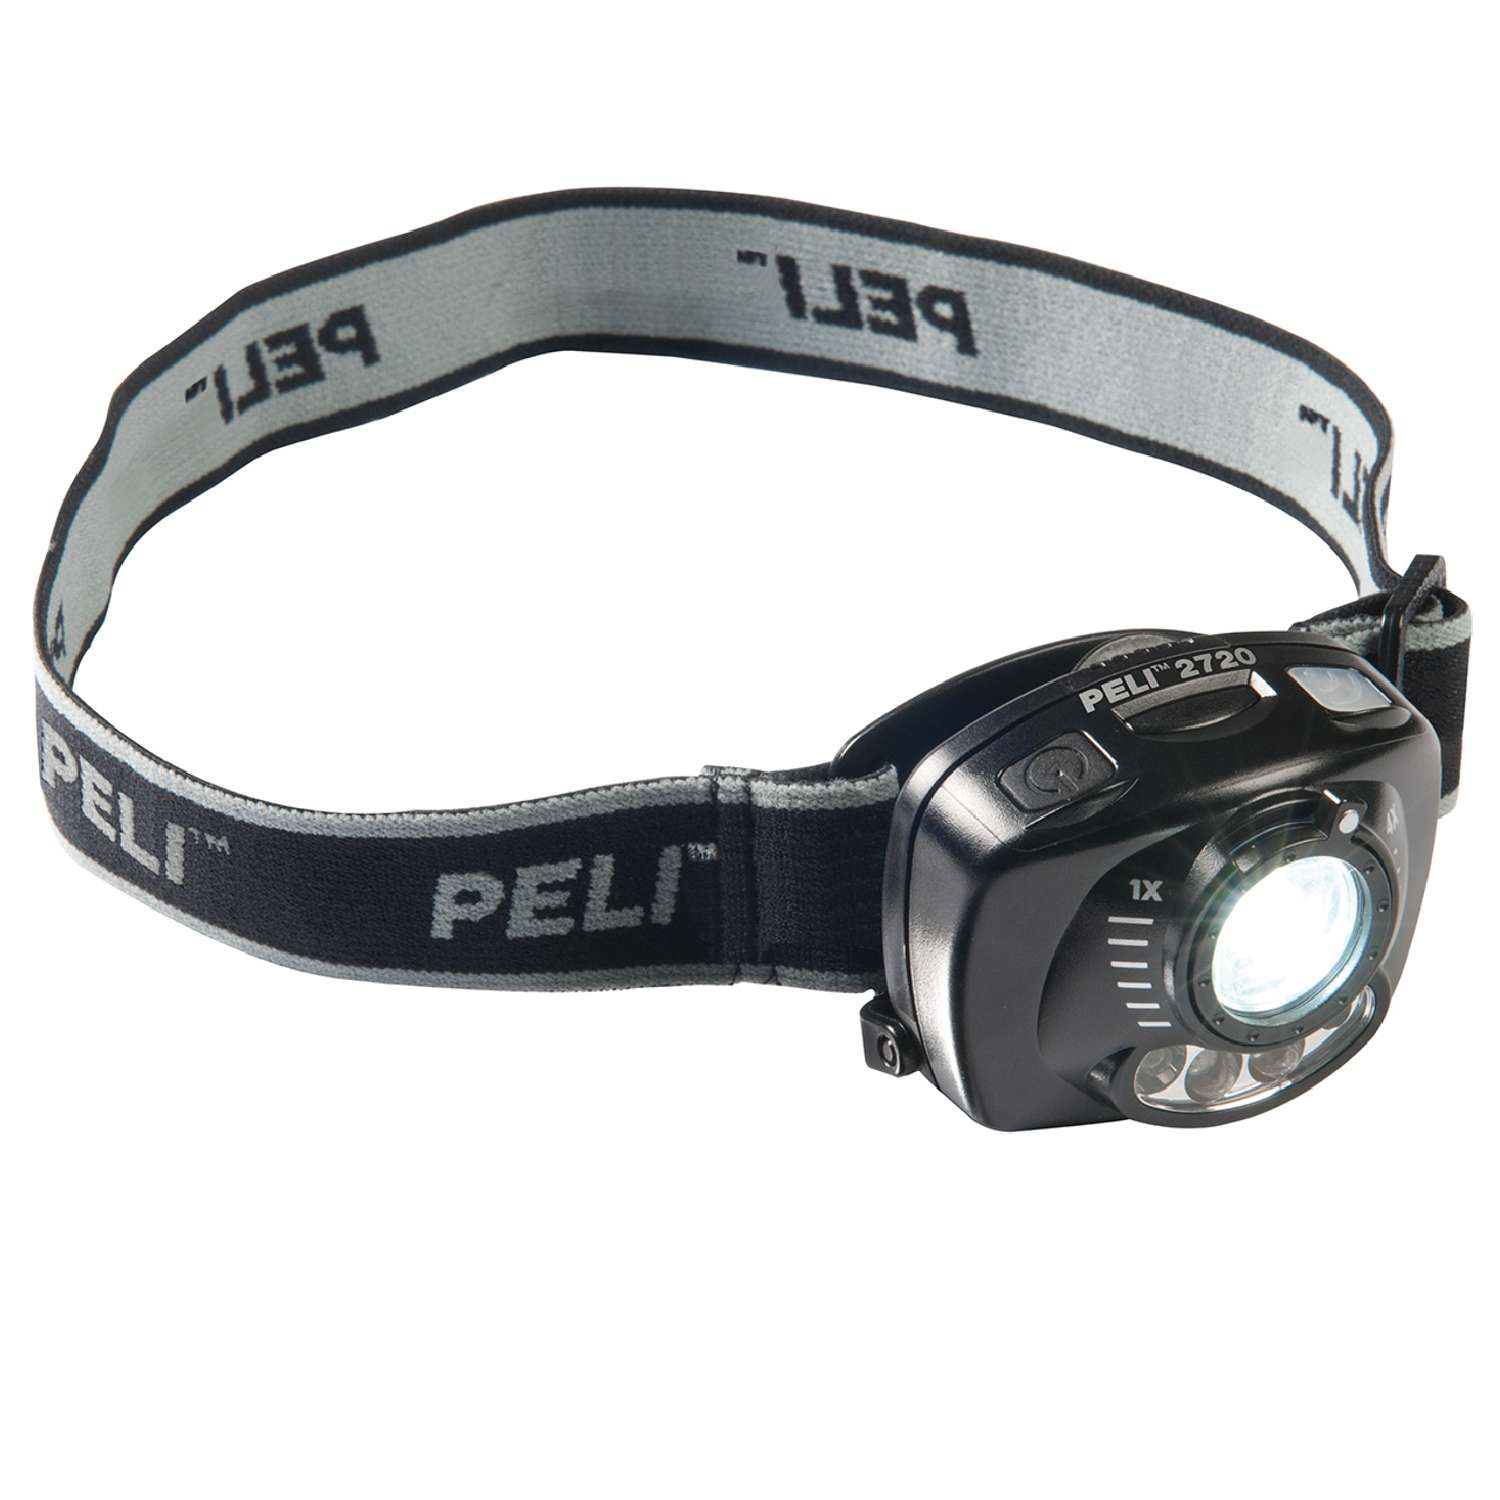 Peli™ 2720 LED-Kopfleuchte, inkl. Batterien